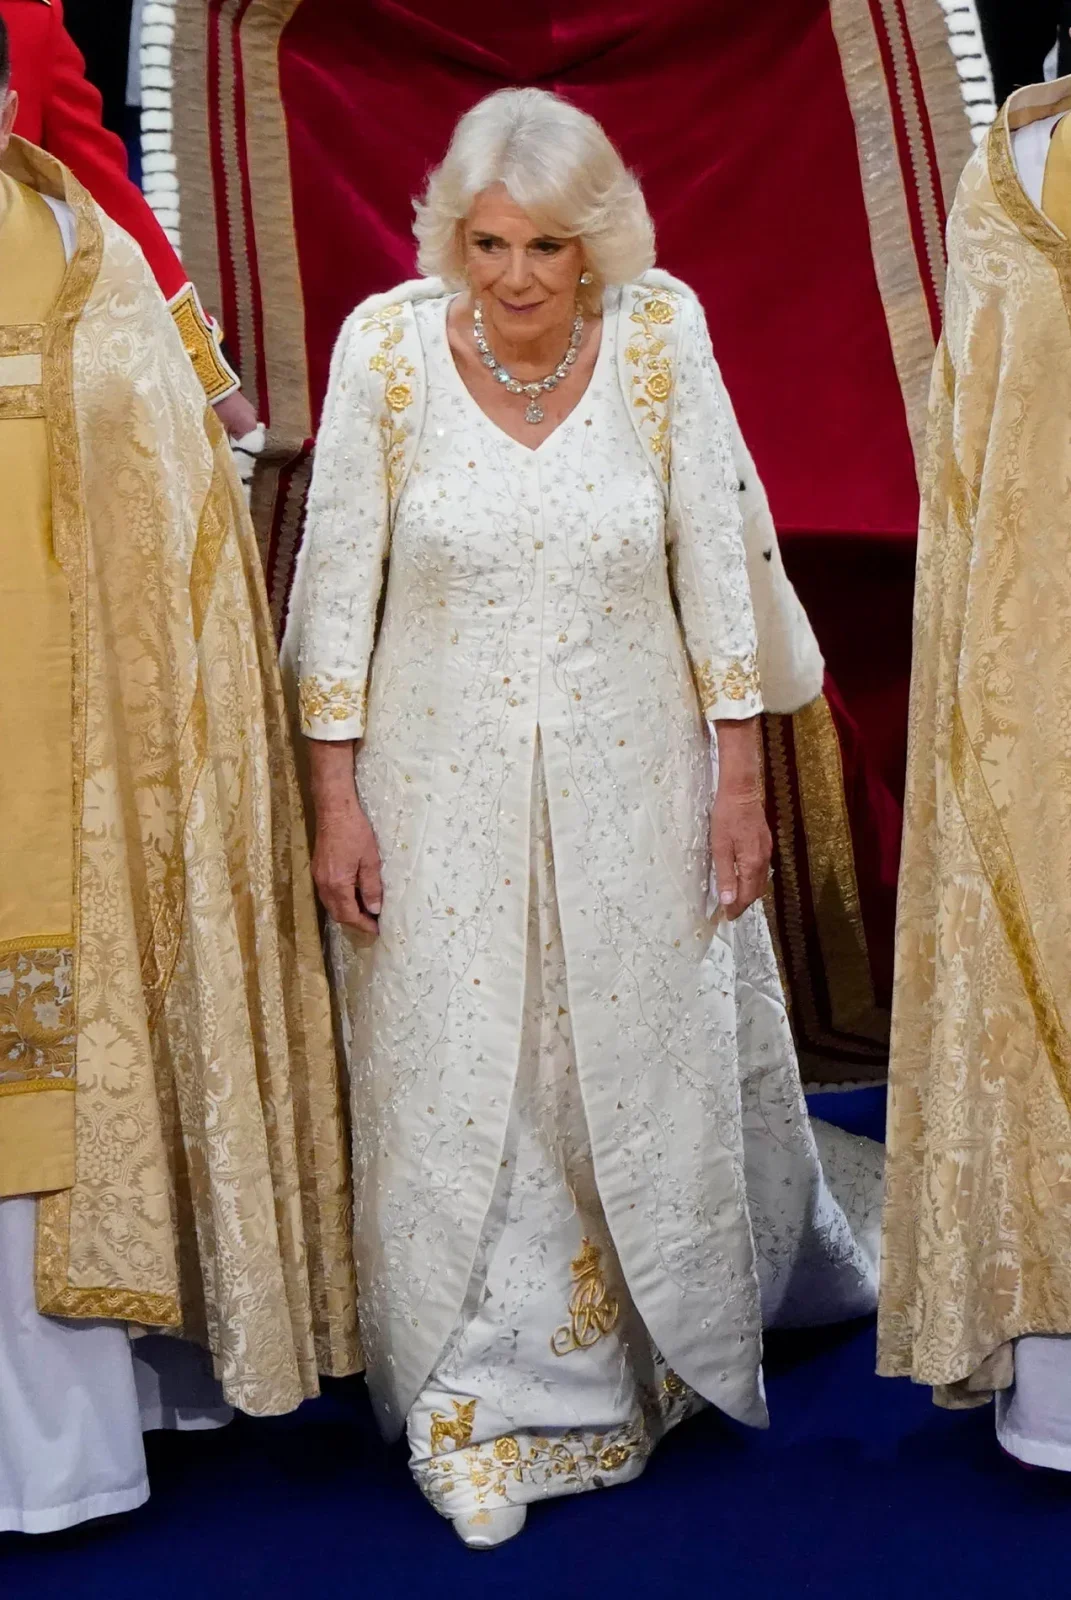 สมเด็จพระราชินีคามิลลาแห่งสหราชอาณาจักร (Queen Camilla)